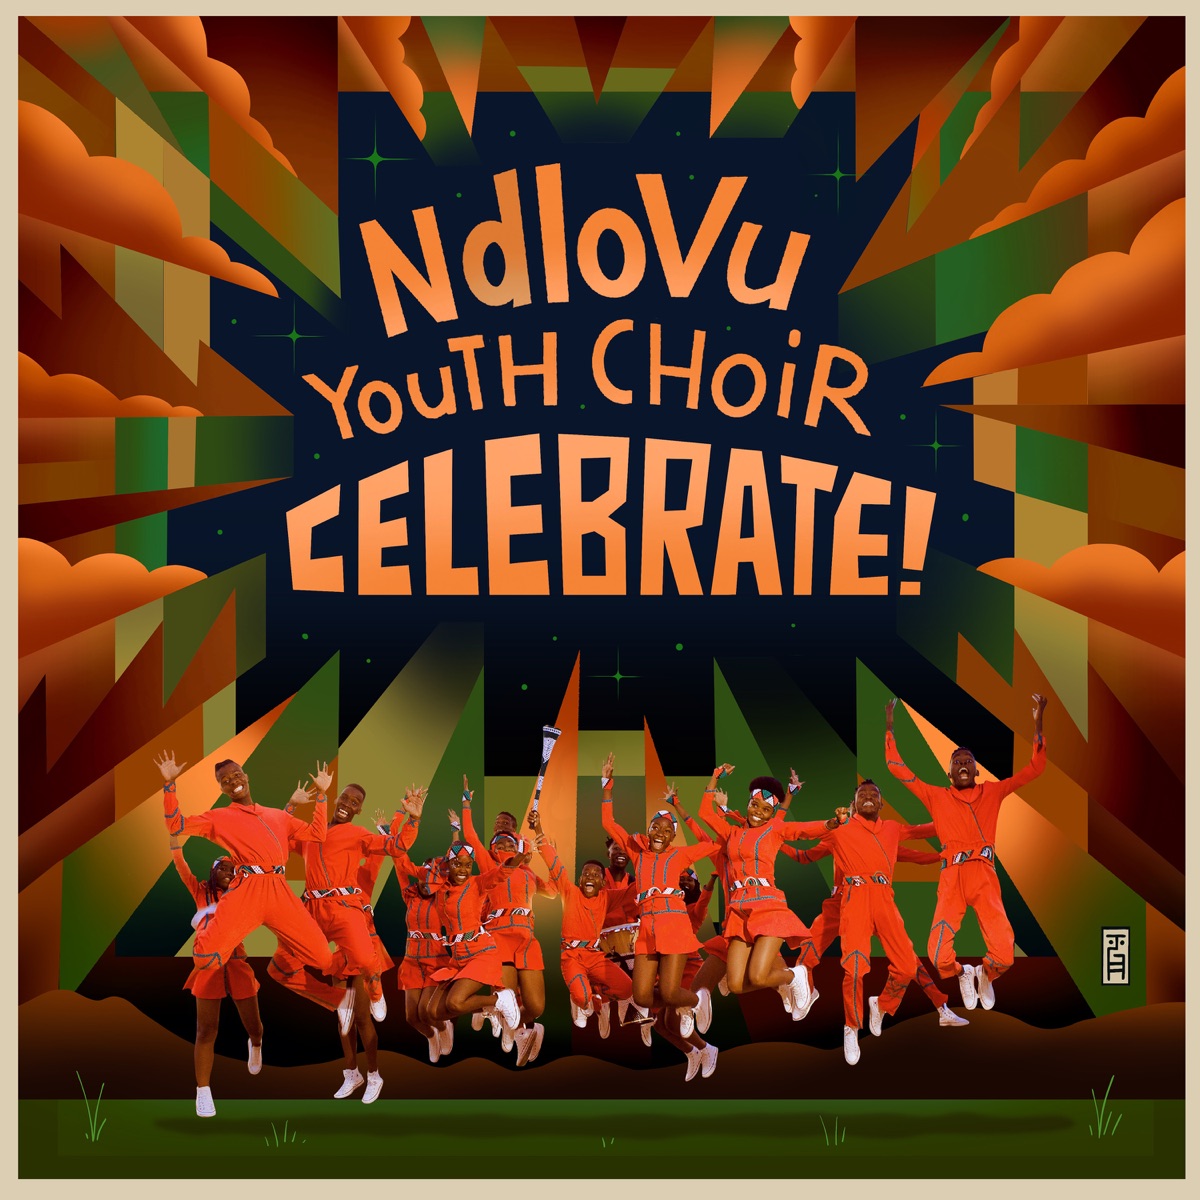 MP3: Ndlovu Youth Choir – Sgudi Snyc